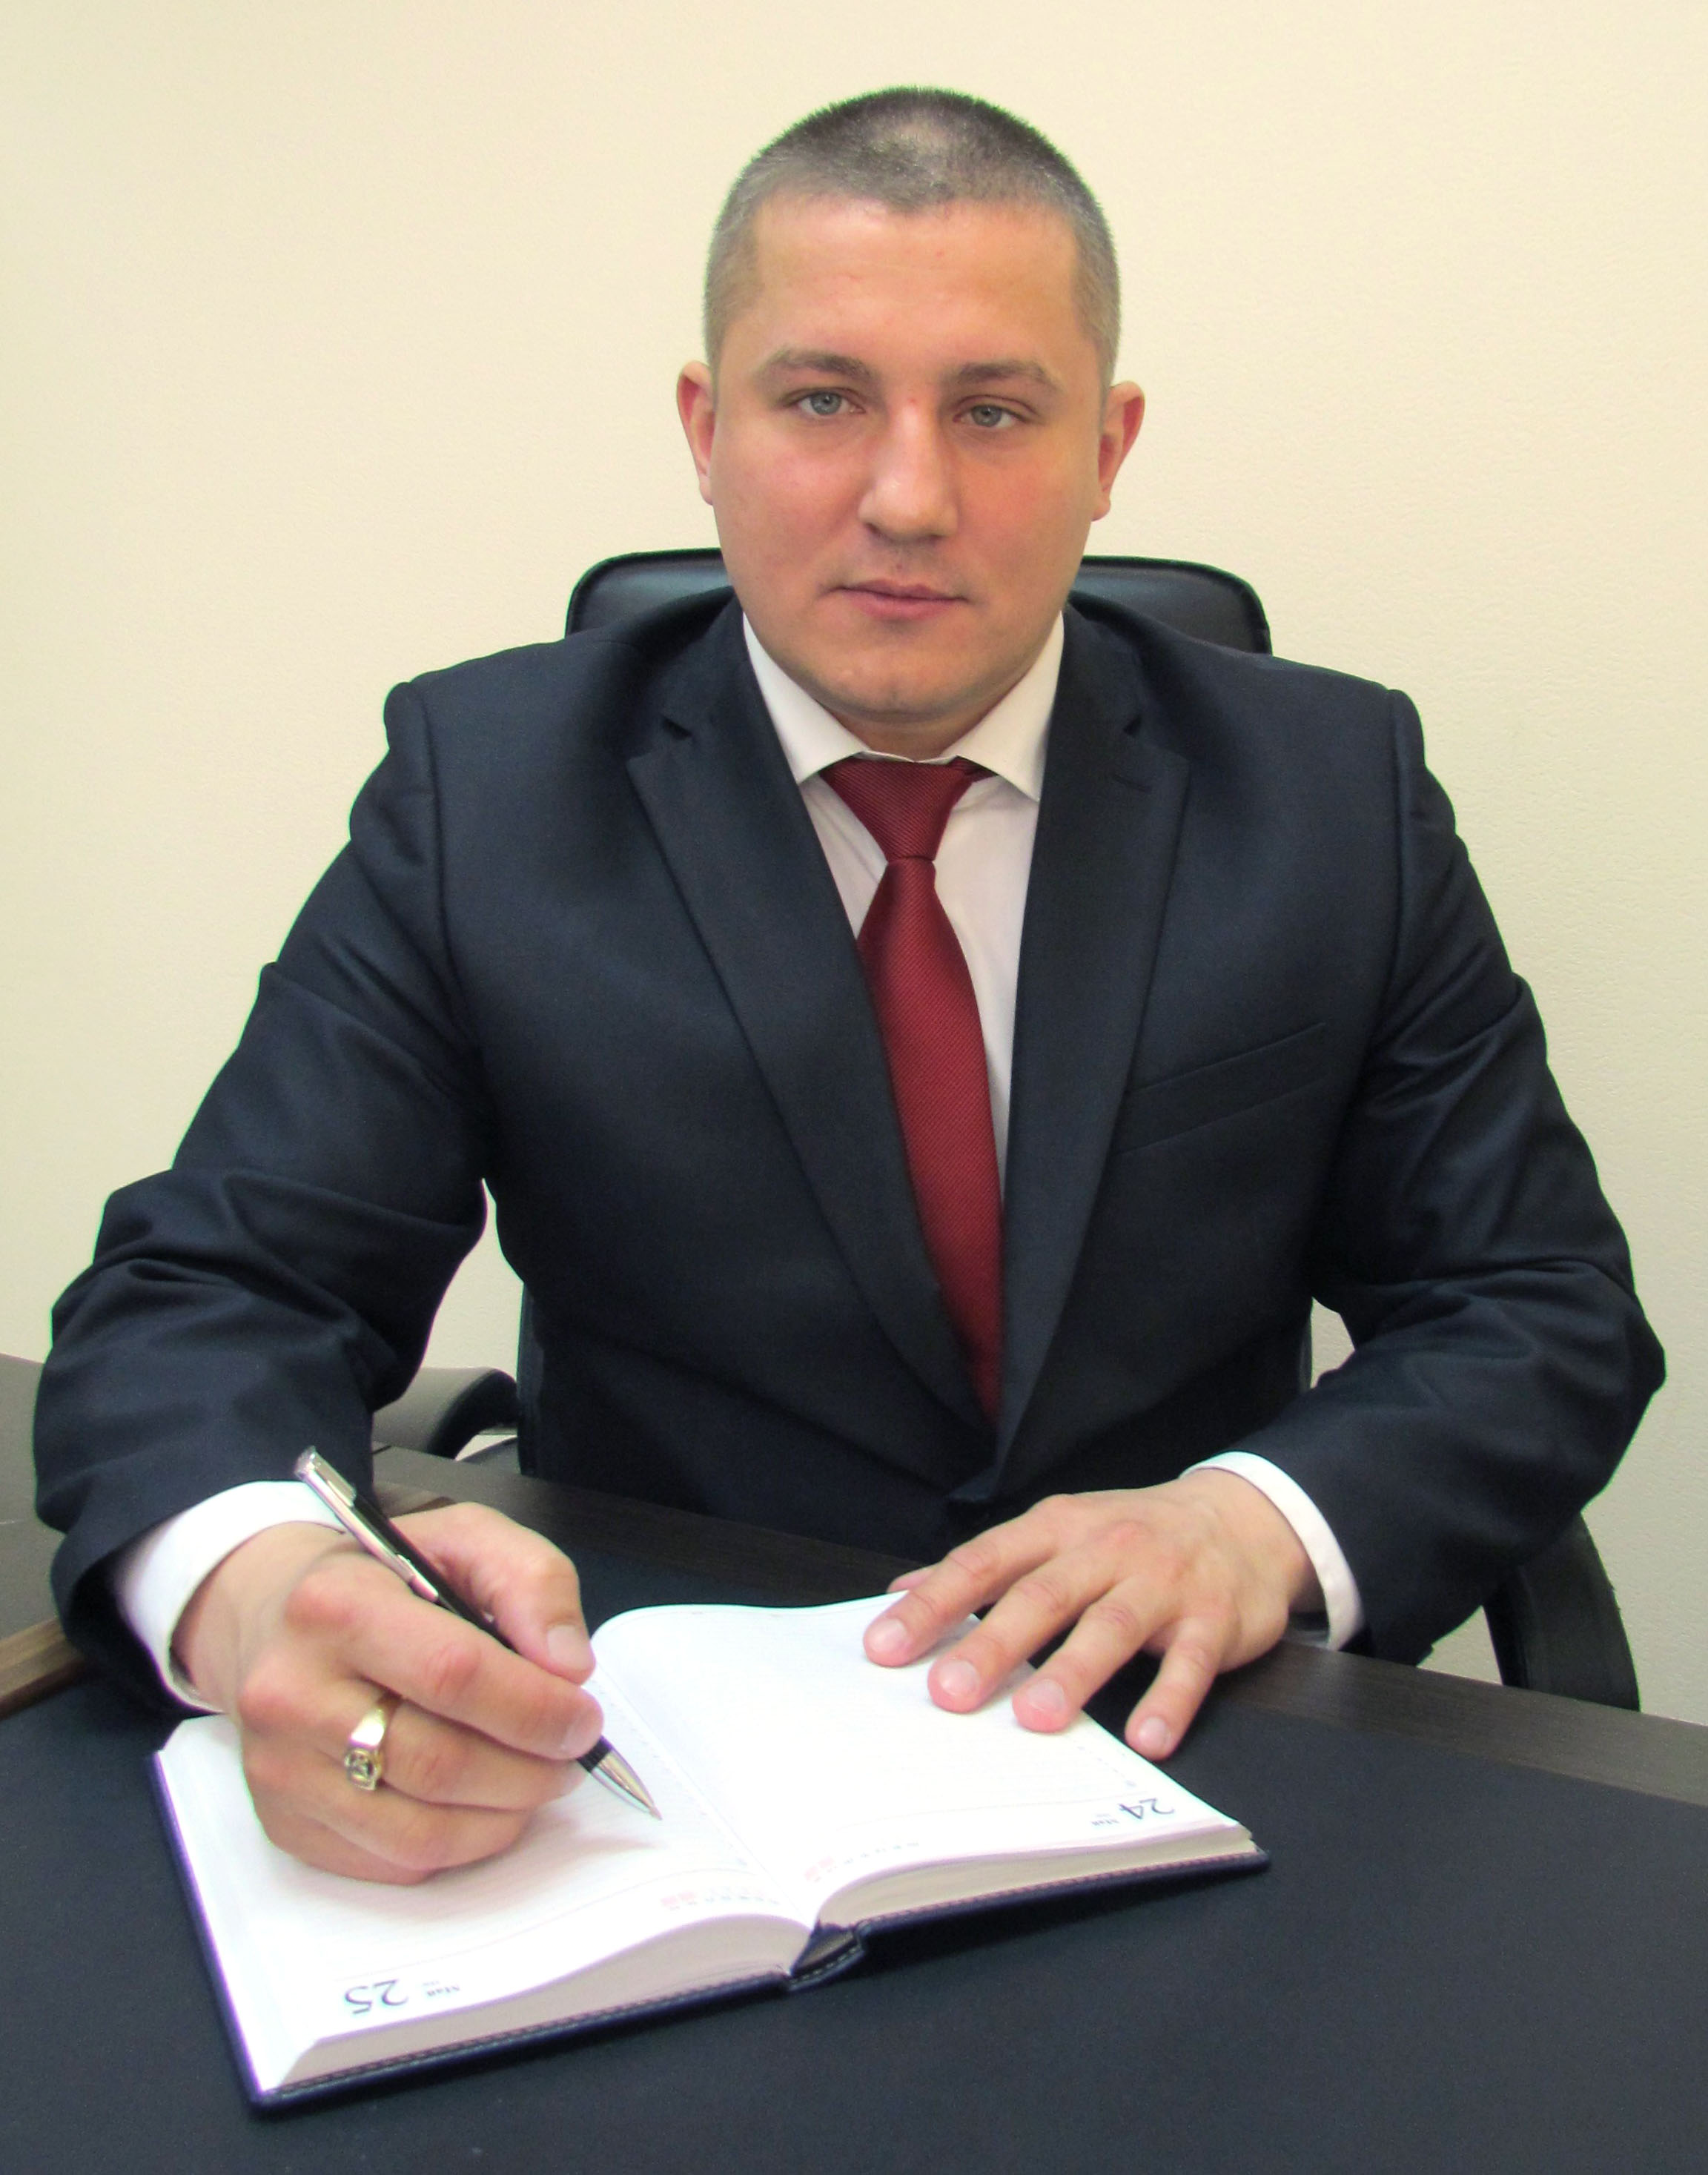 Вадим Владимирович Назаров, исполняющий обязанности директора «Центра поддержки предпринимательства»